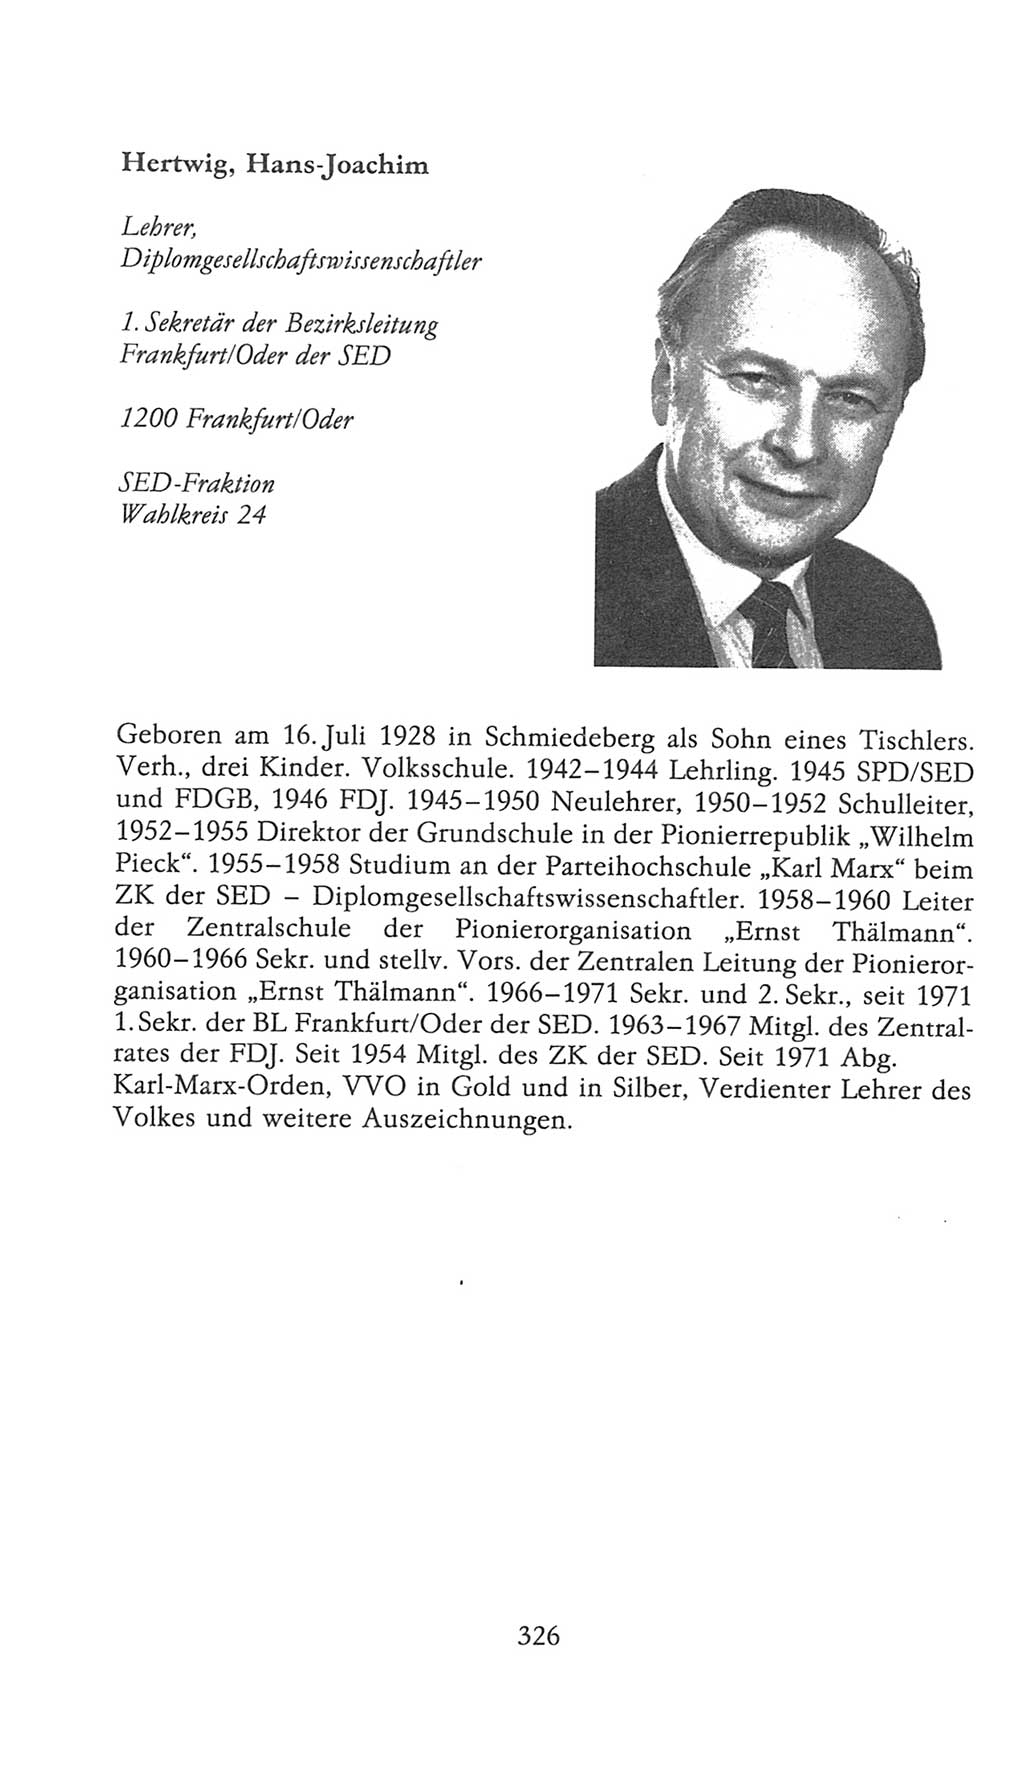 Volkskammer (VK) der Deutschen Demokratischen Republik (DDR), 9. Wahlperiode 1986-1990, Seite 326 (VK. DDR 9. WP. 1986-1990, S. 326)